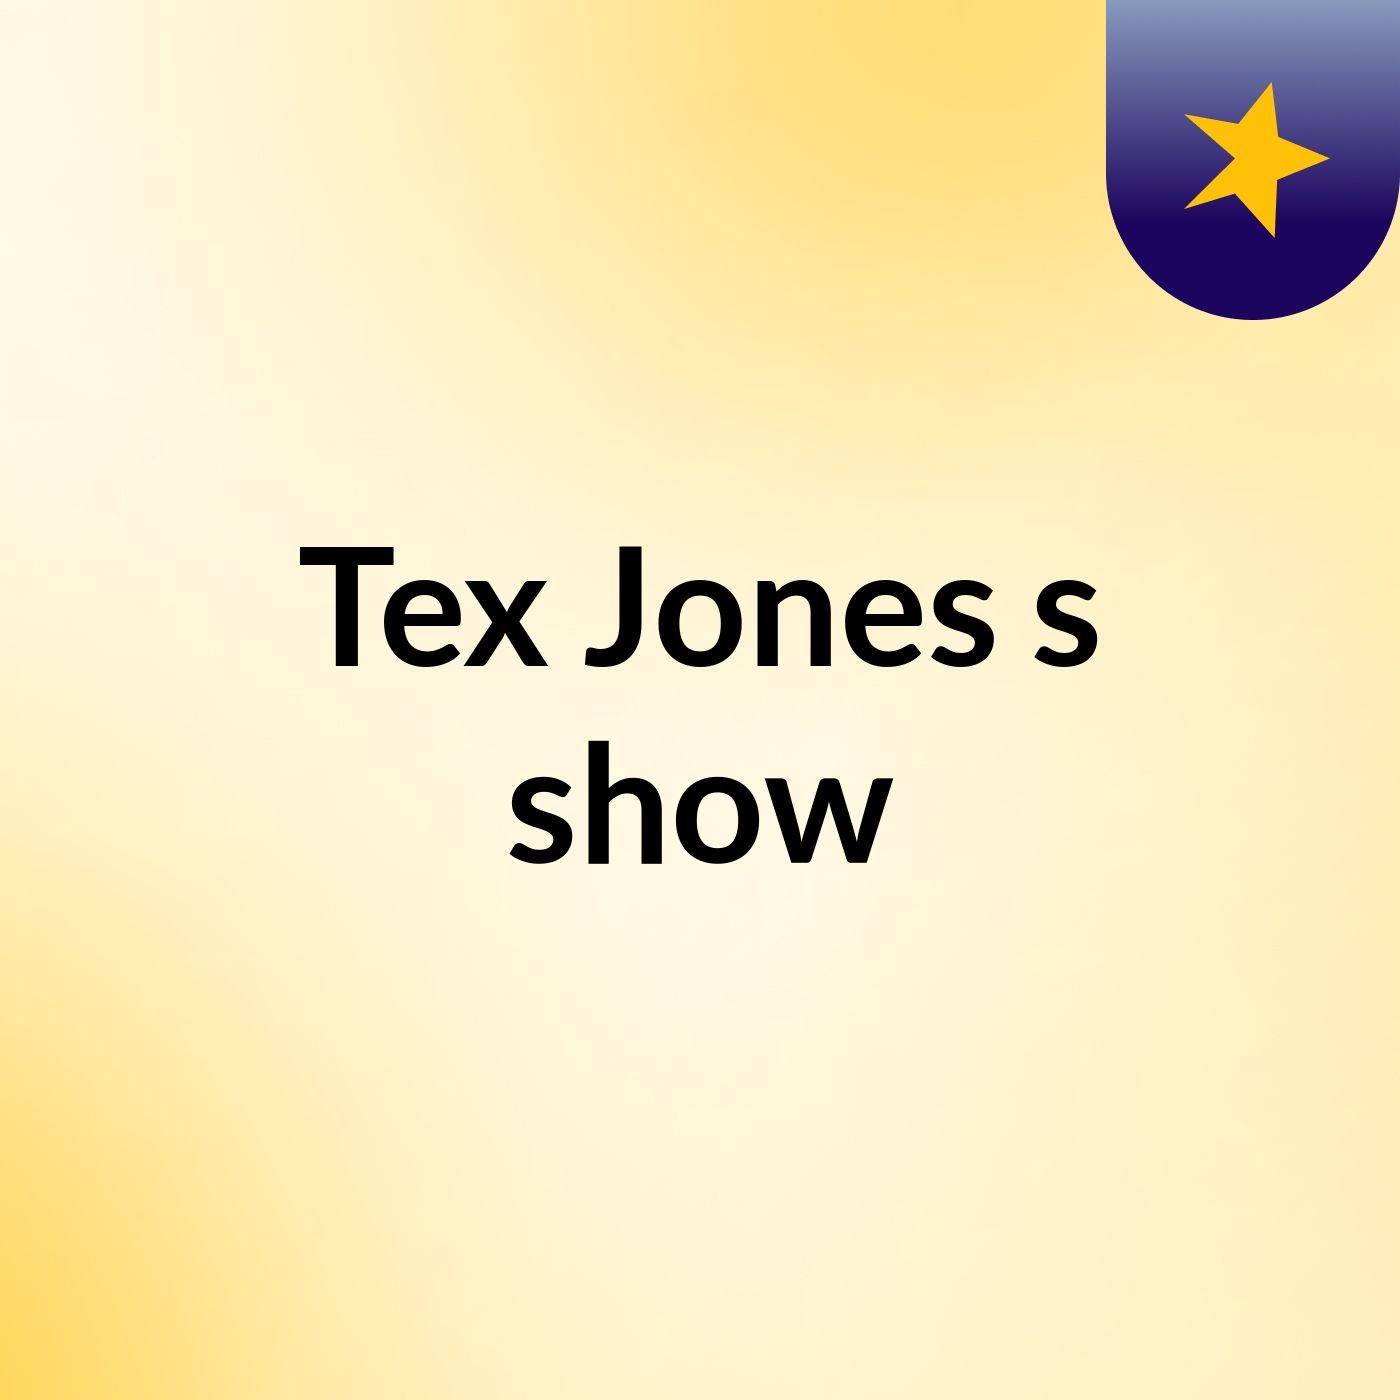 Tex Jones's show